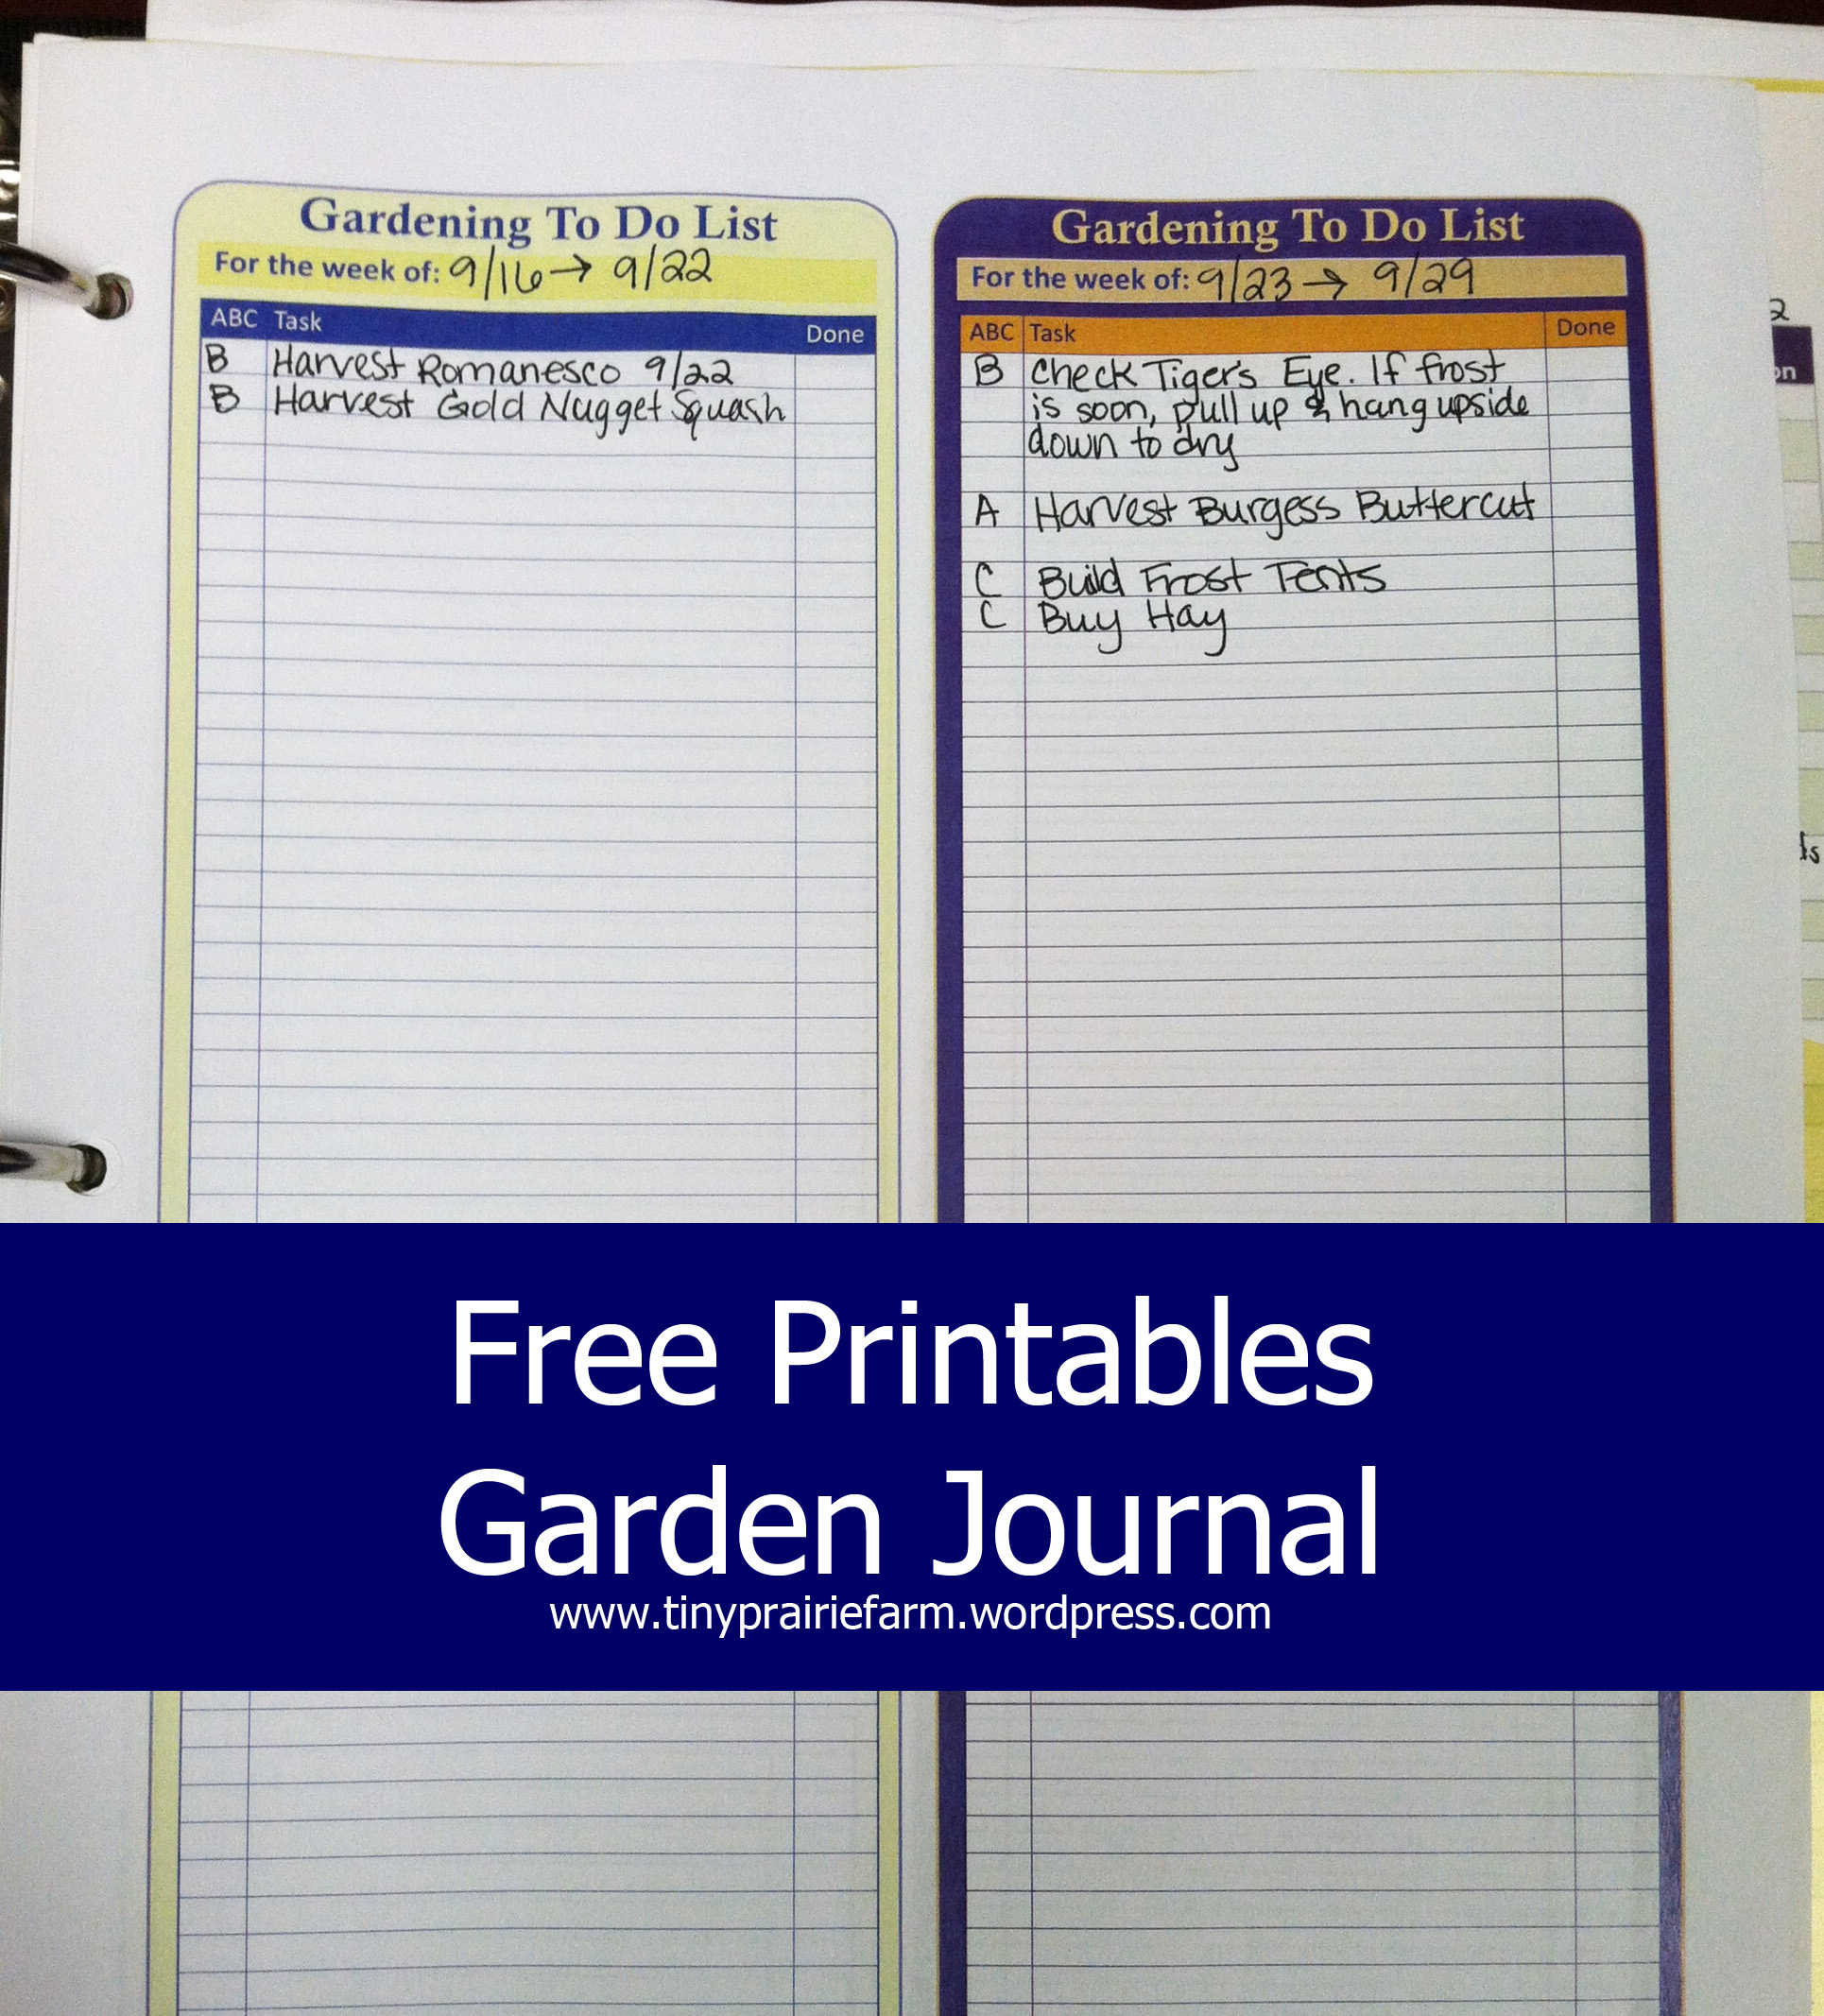 Garden Planning: My Garden Journal | Tiny Prairie Farm